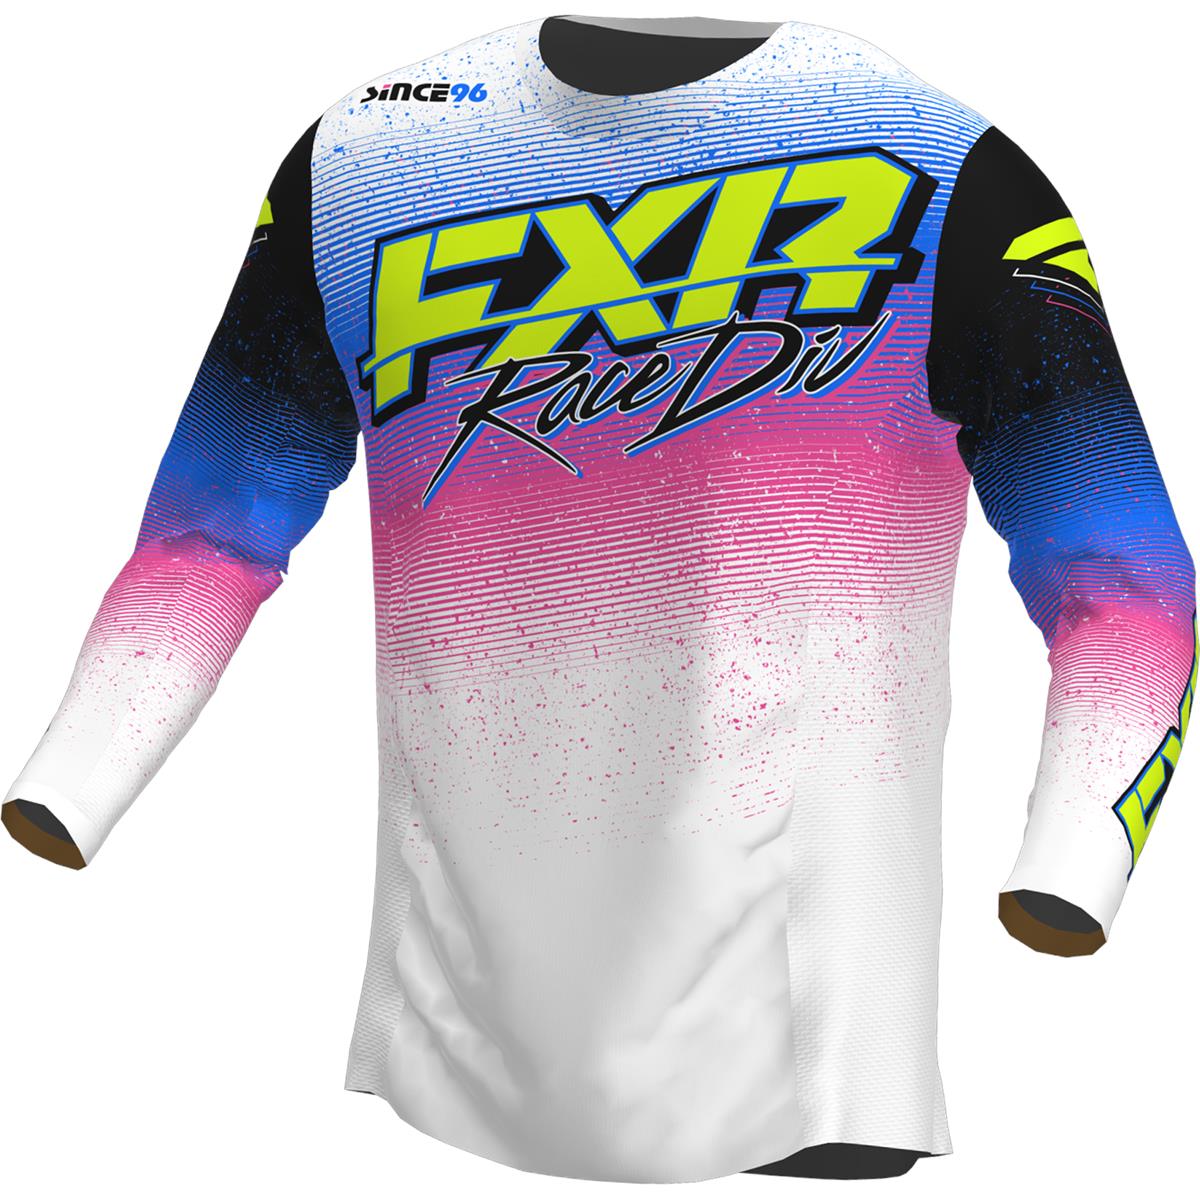 FXR MX Jersey Podium Retro